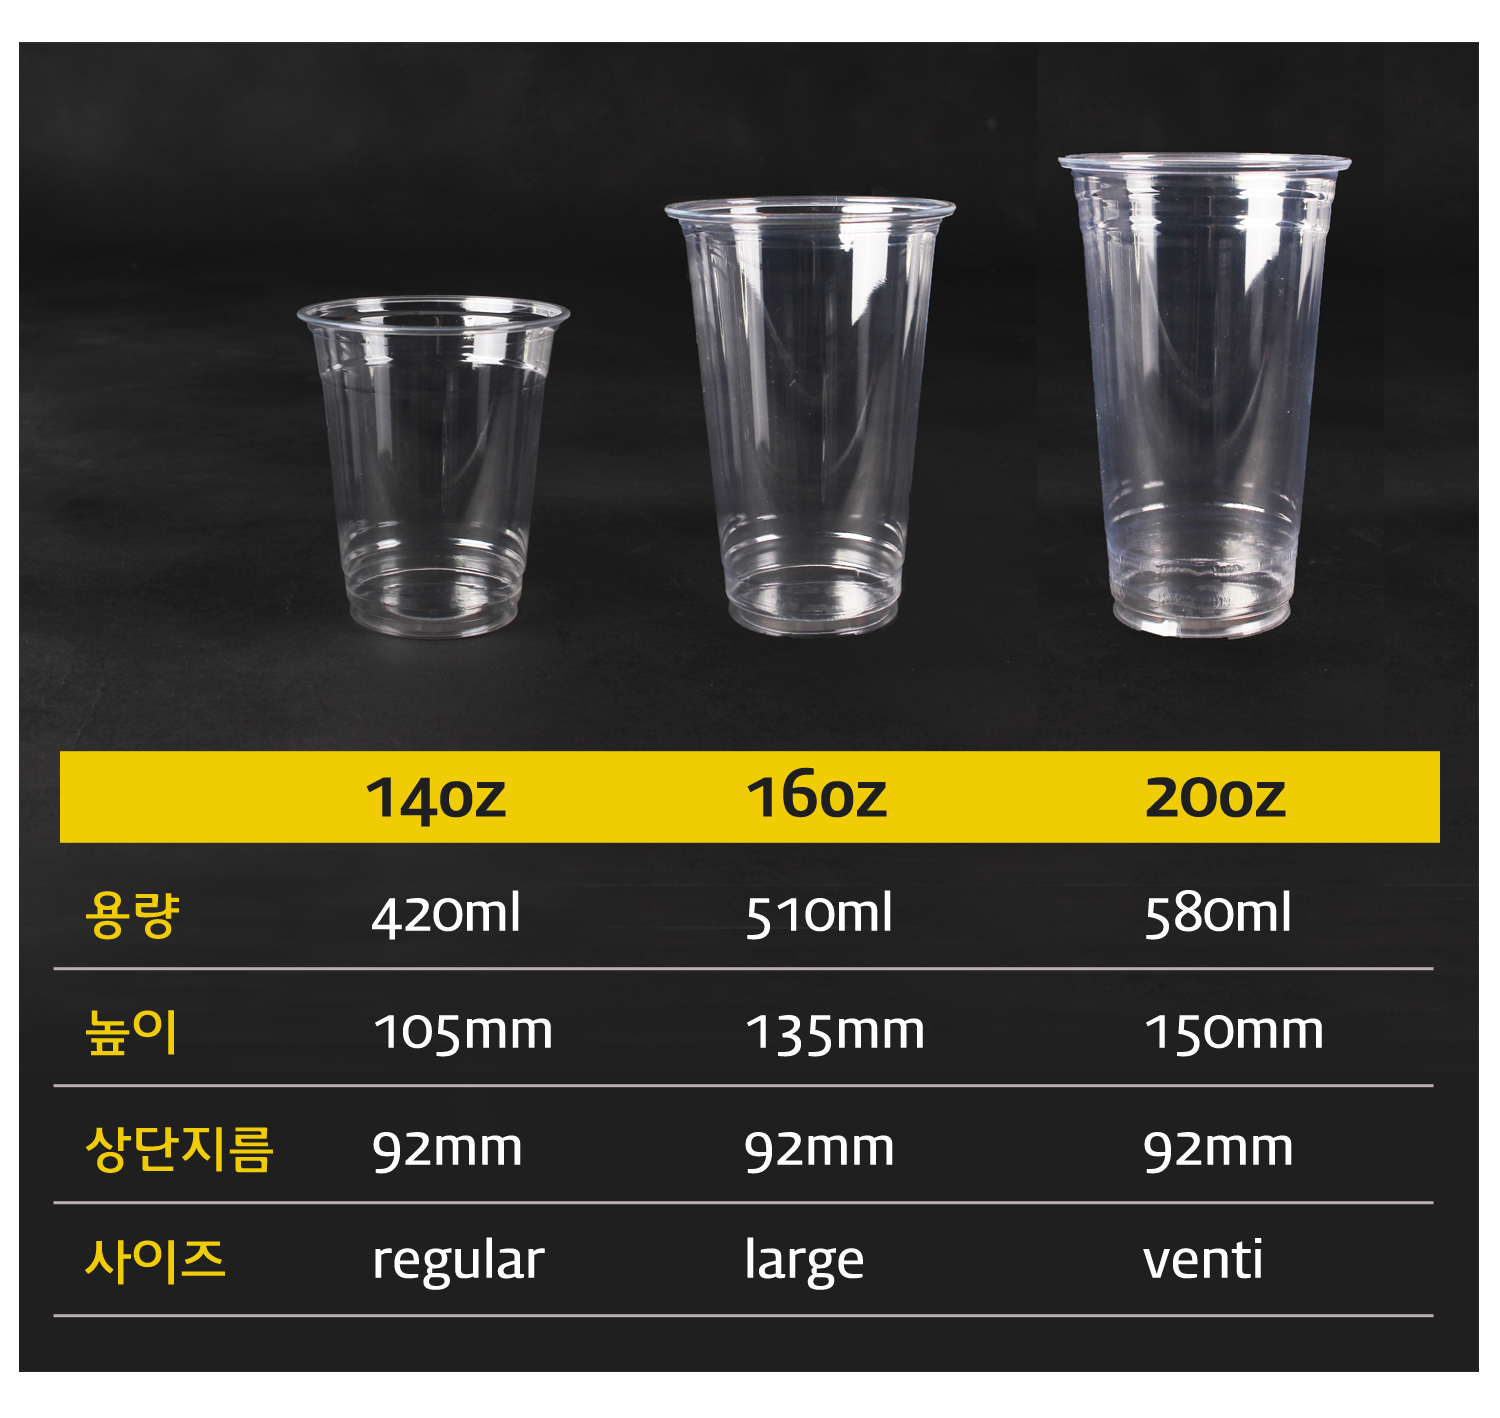 어두운배경에 투명한 컵이 사이즈별로 놓여있고 사이즈에 따른 크기 용량이 잘 정리되어있는 표가 보인다.